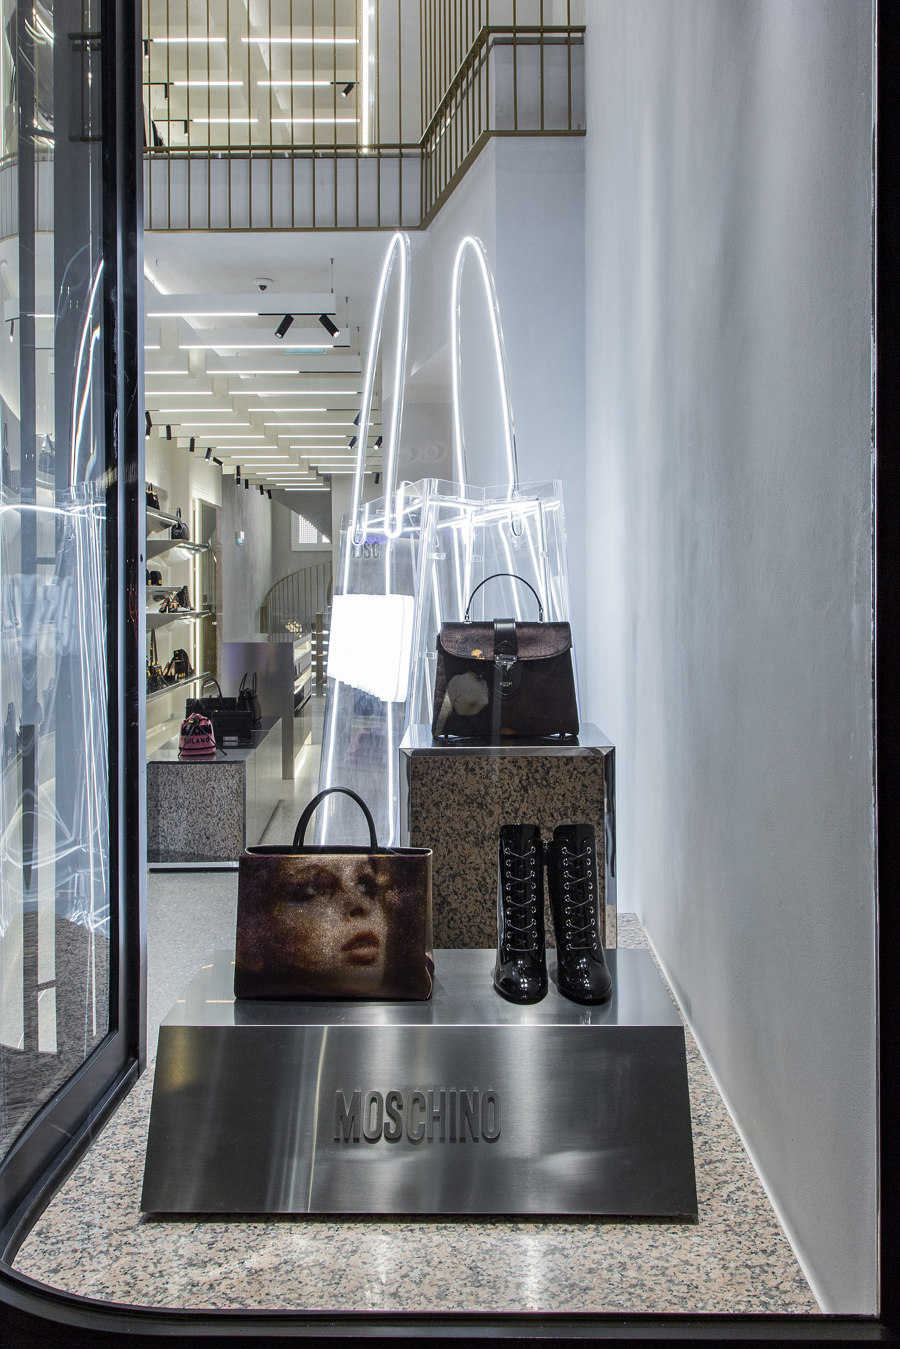 Moschino Showroom de Fabio Ferrillo | Diseño de tiendas